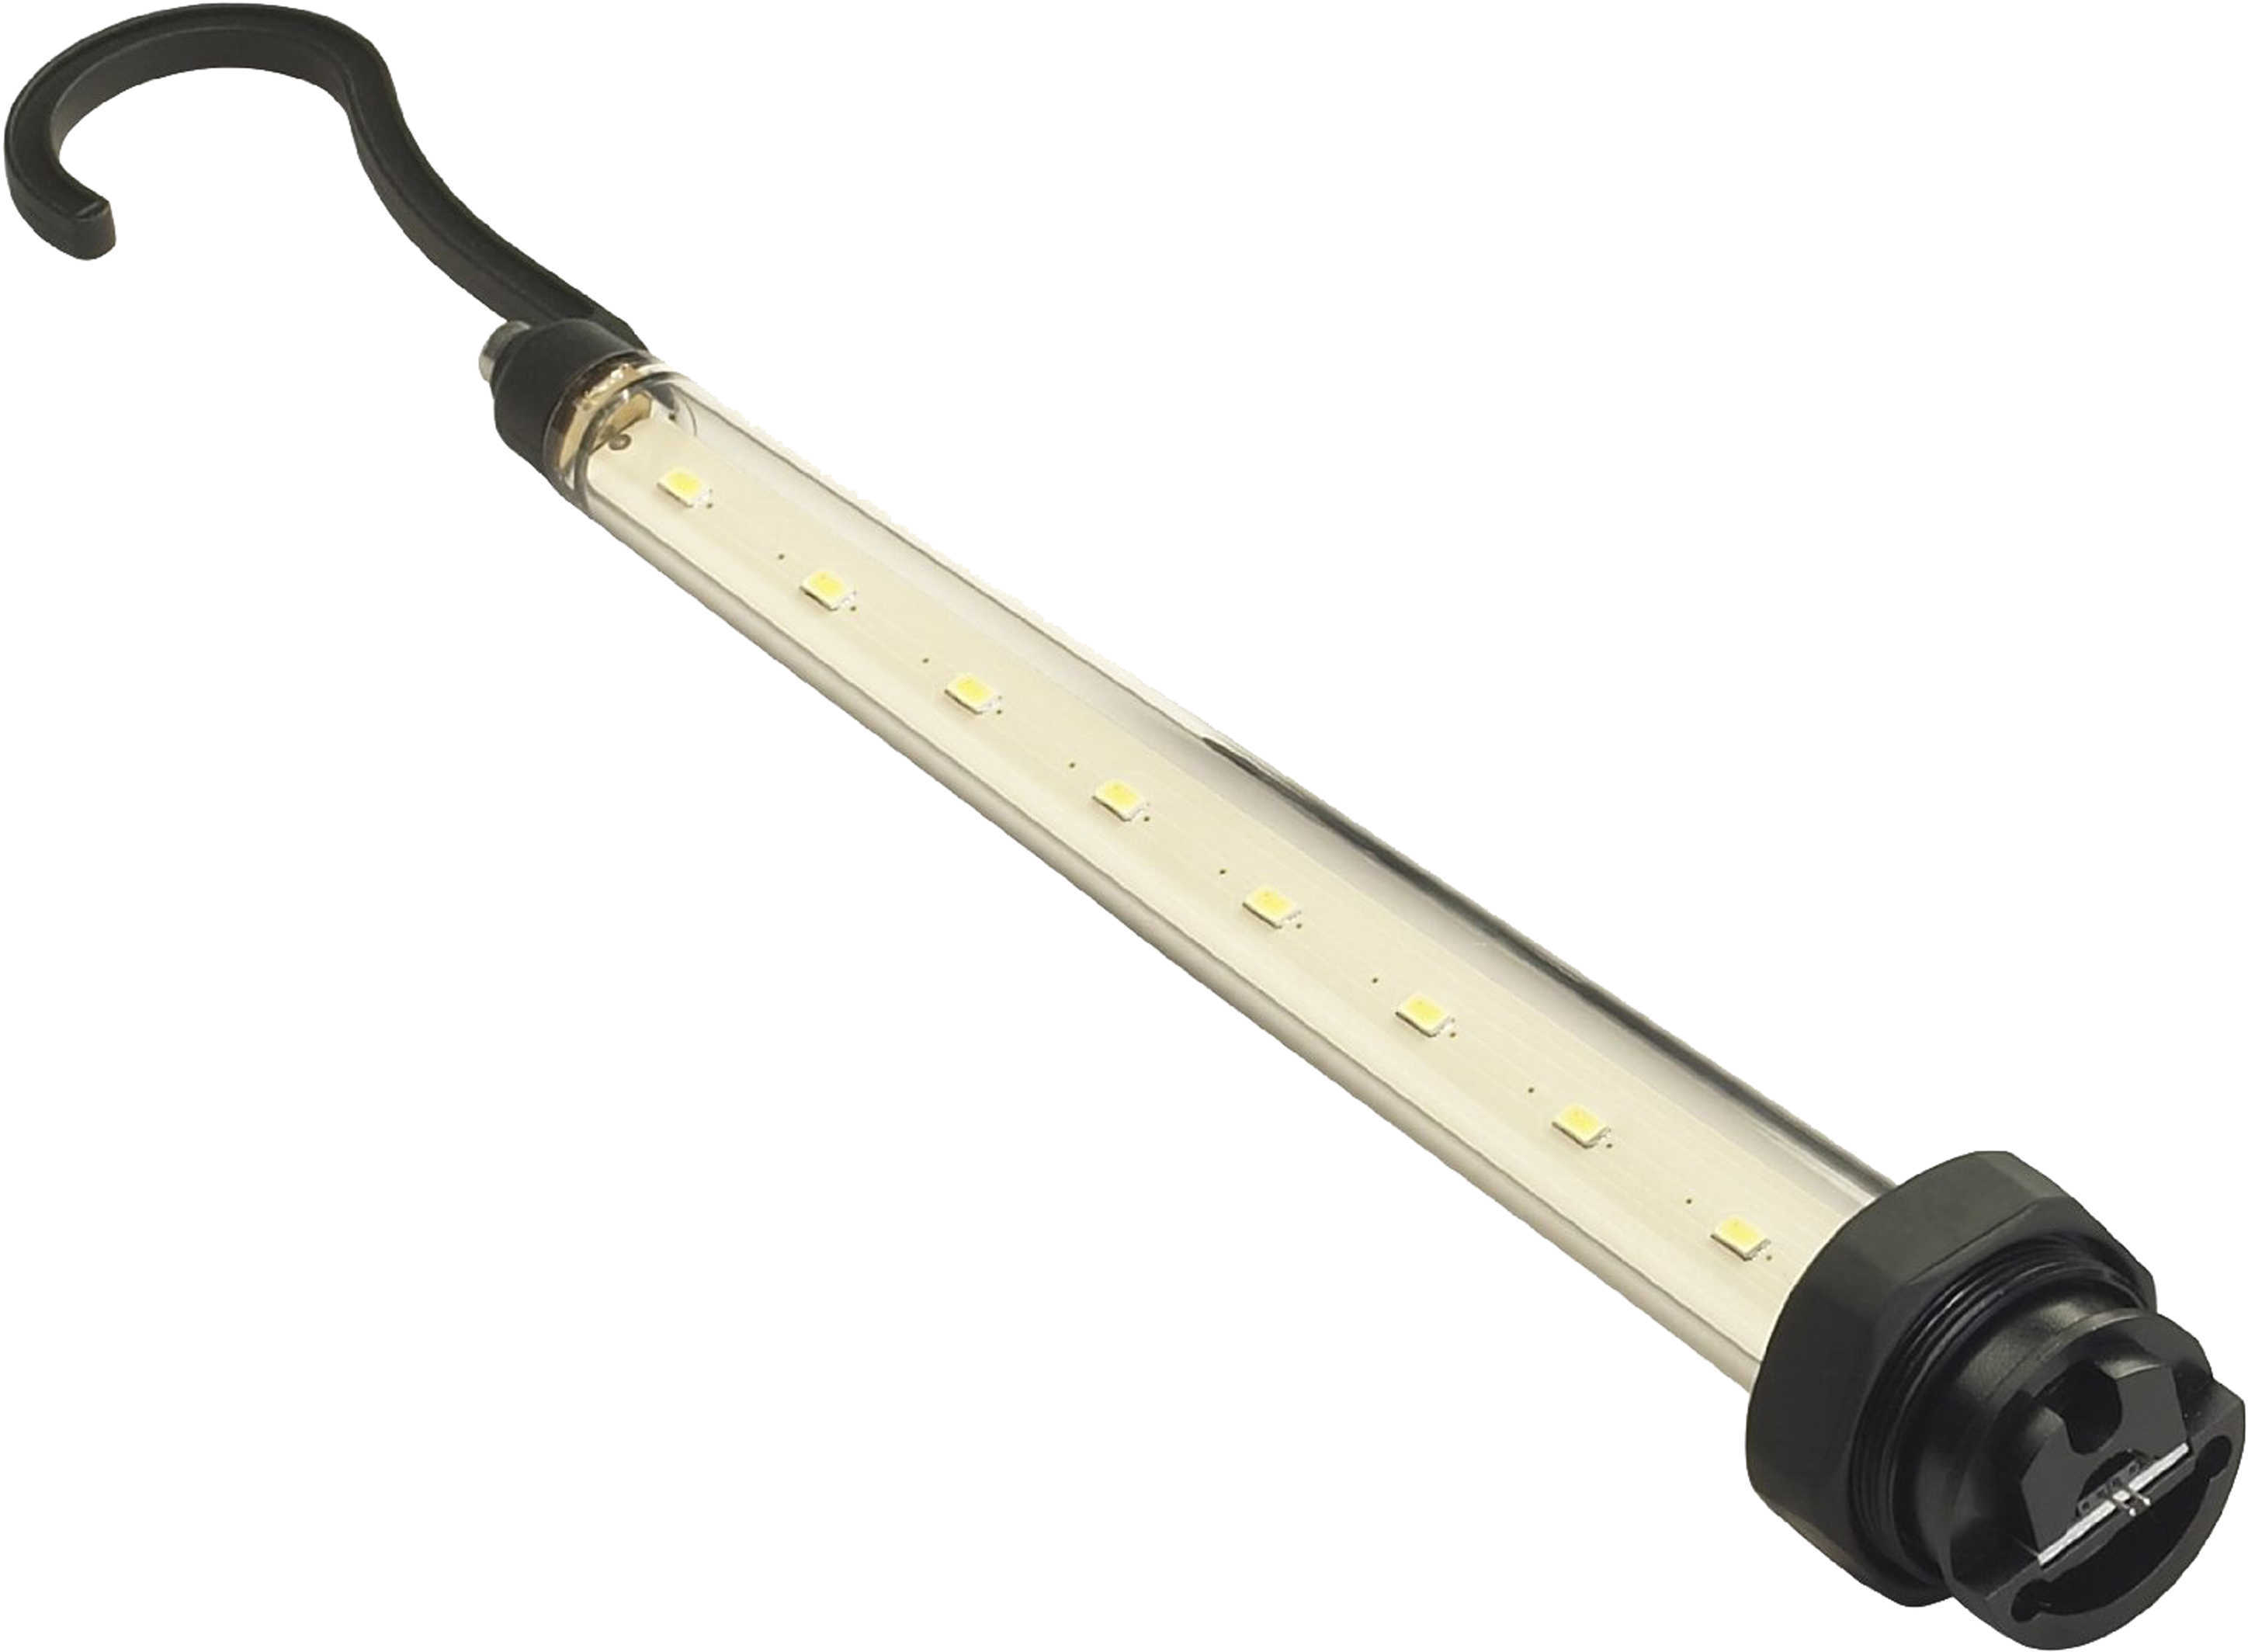 Streamlight Stinger Lite Pipe Kit Md: 75951